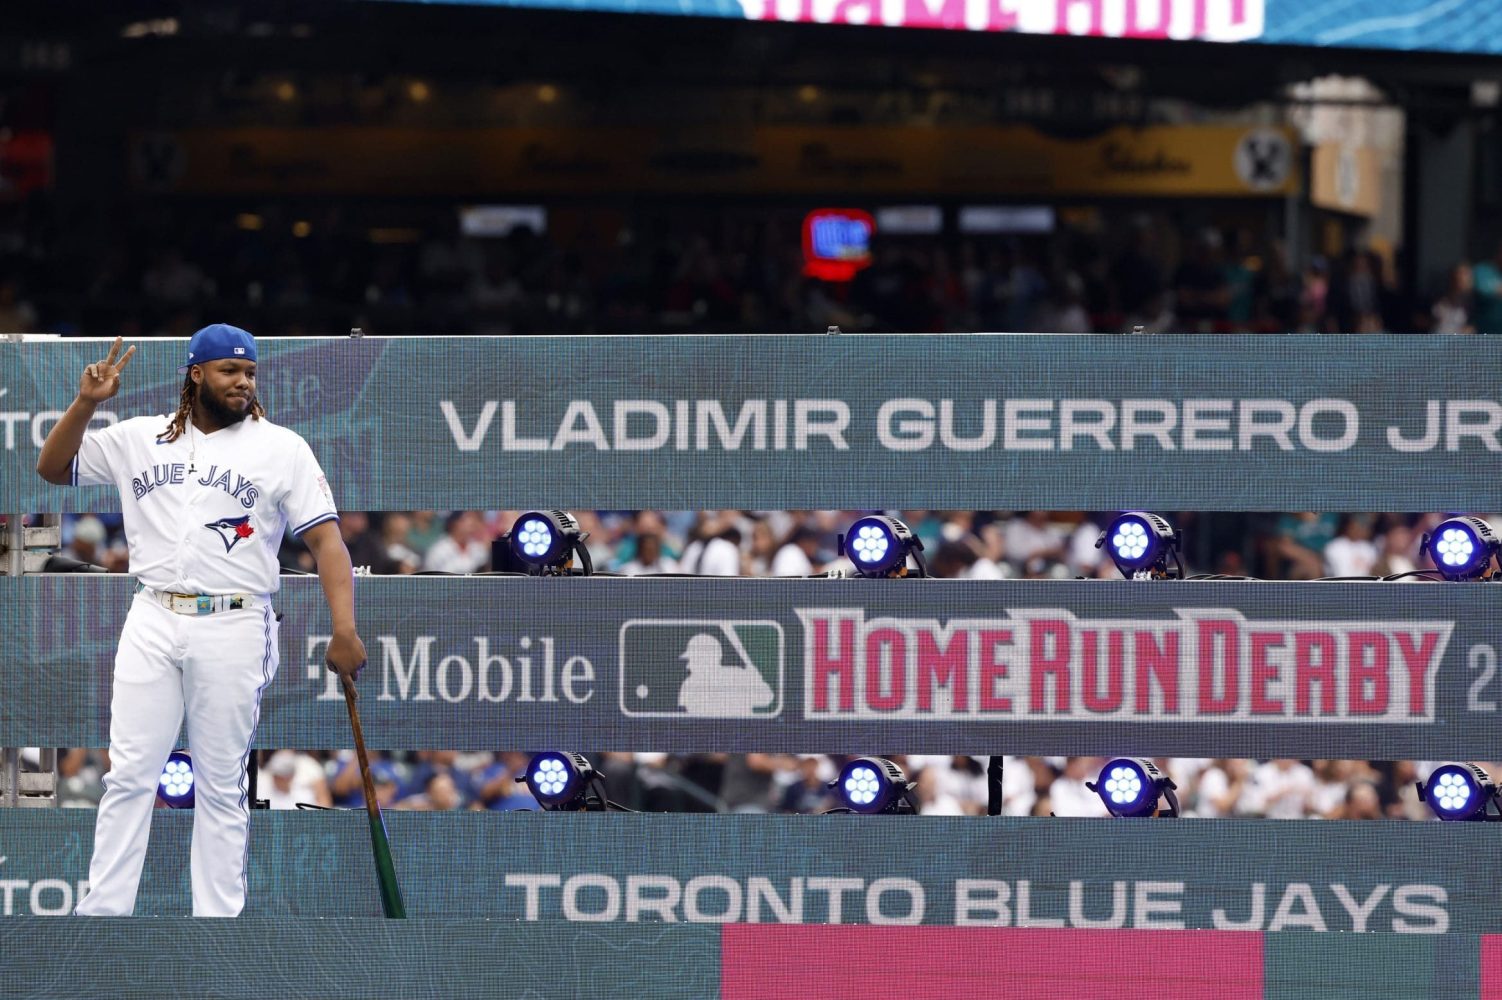 Vladimir Guerrero Jr Toronto Blue Jays Home Run Derby Baseball